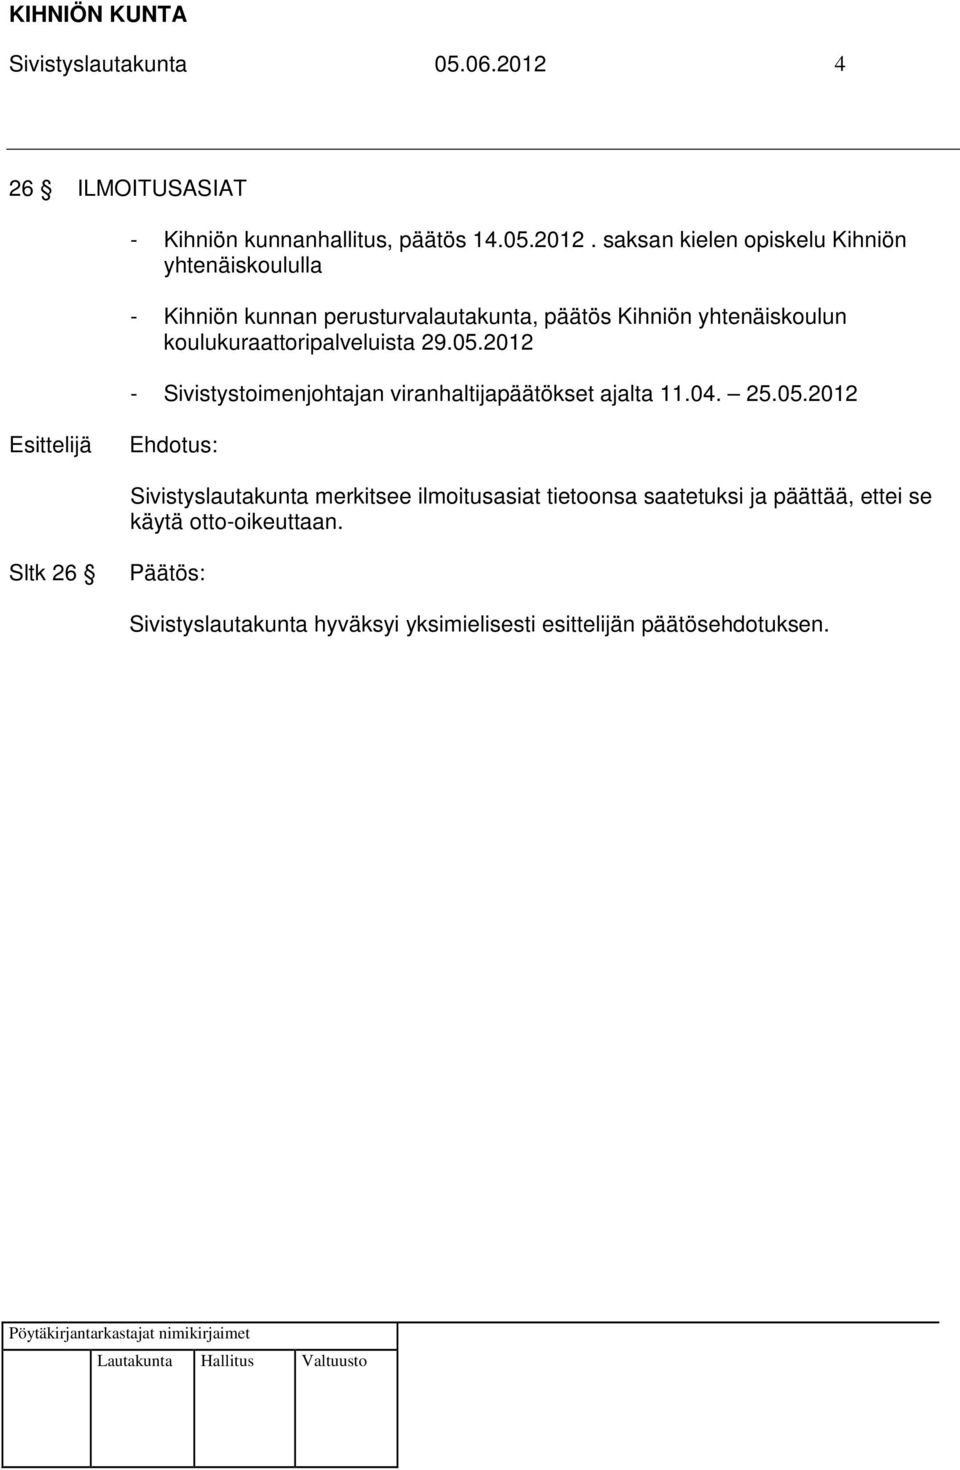 saksan kielen opiskelu Kihniön yhtenäiskoululla - Kihniön kunnan perusturvalautakunta, päätös Kihniön yhtenäiskoulun